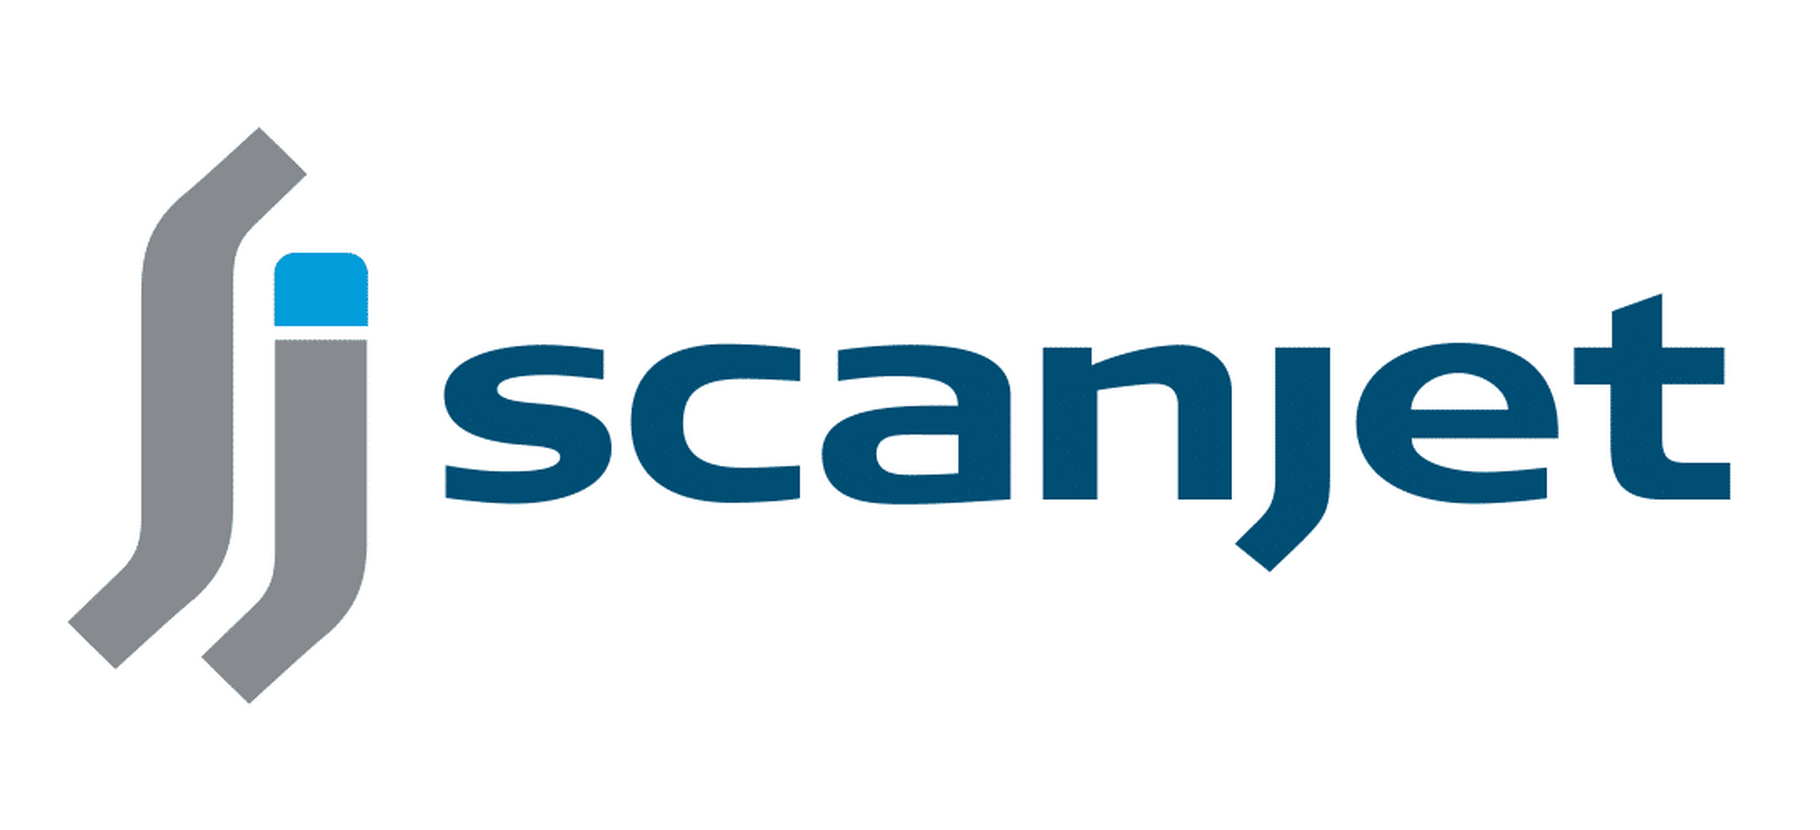 scanjet_logo_large